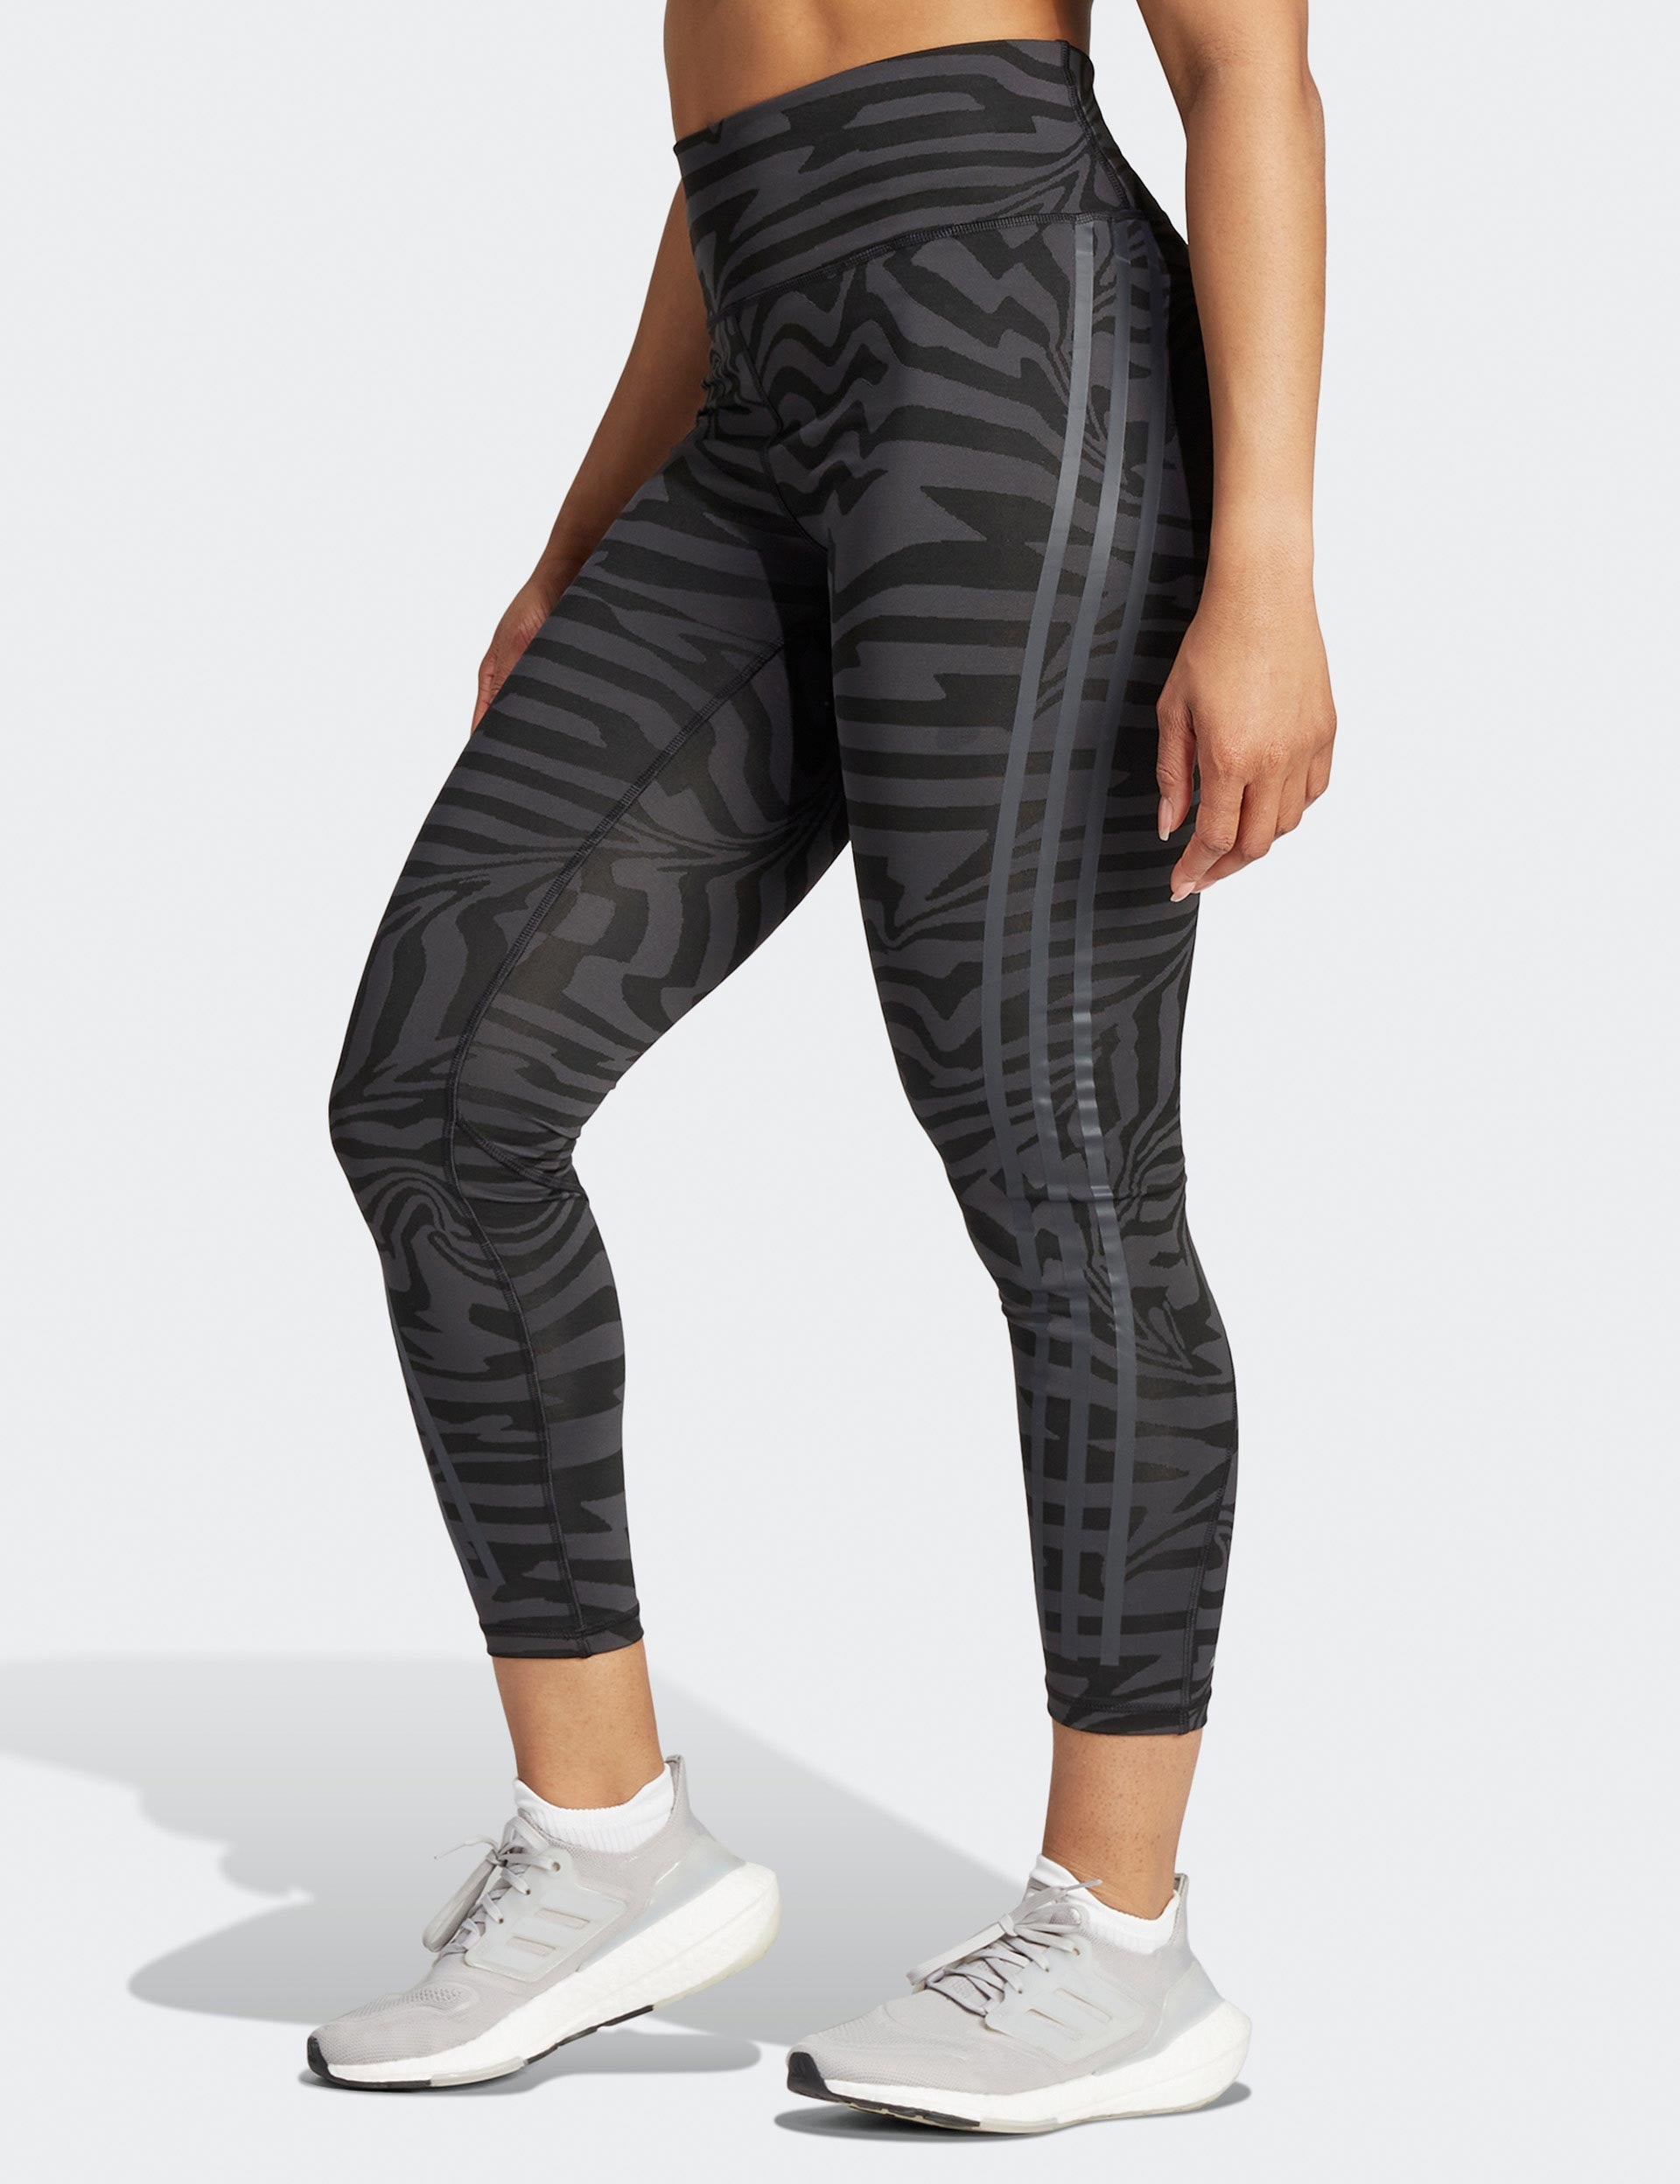 adidas training 3 stripe leggings in size XS mesh - Depop